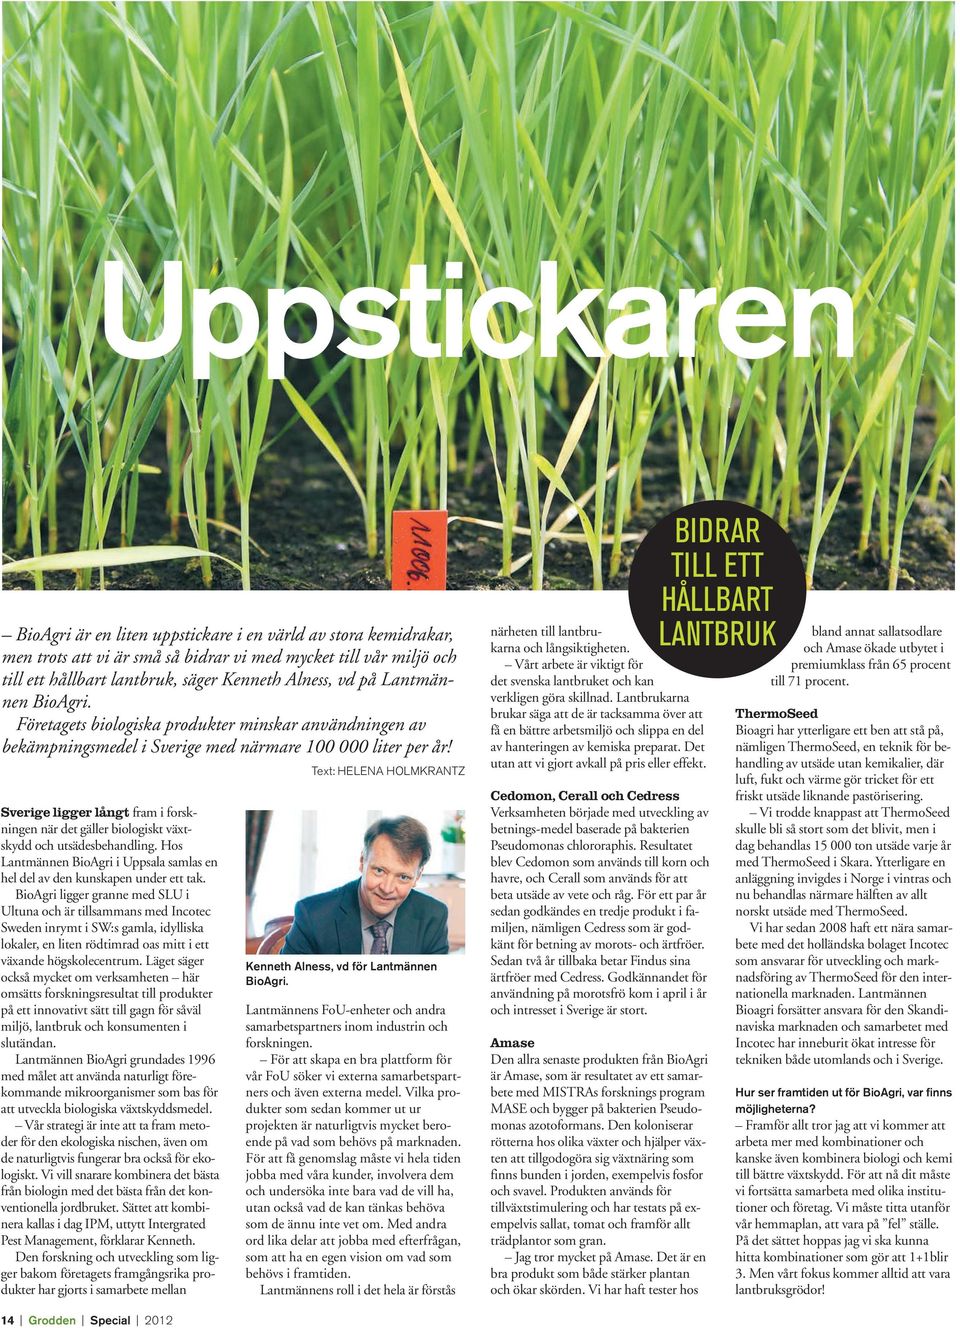 Sverige ligger långt fram i forskningen när det gäller biologiskt växtskydd och utsädesbehandling. Hos Lantmännen BioAgri i Uppsala samlas en hel del av den kunskapen under ett tak.